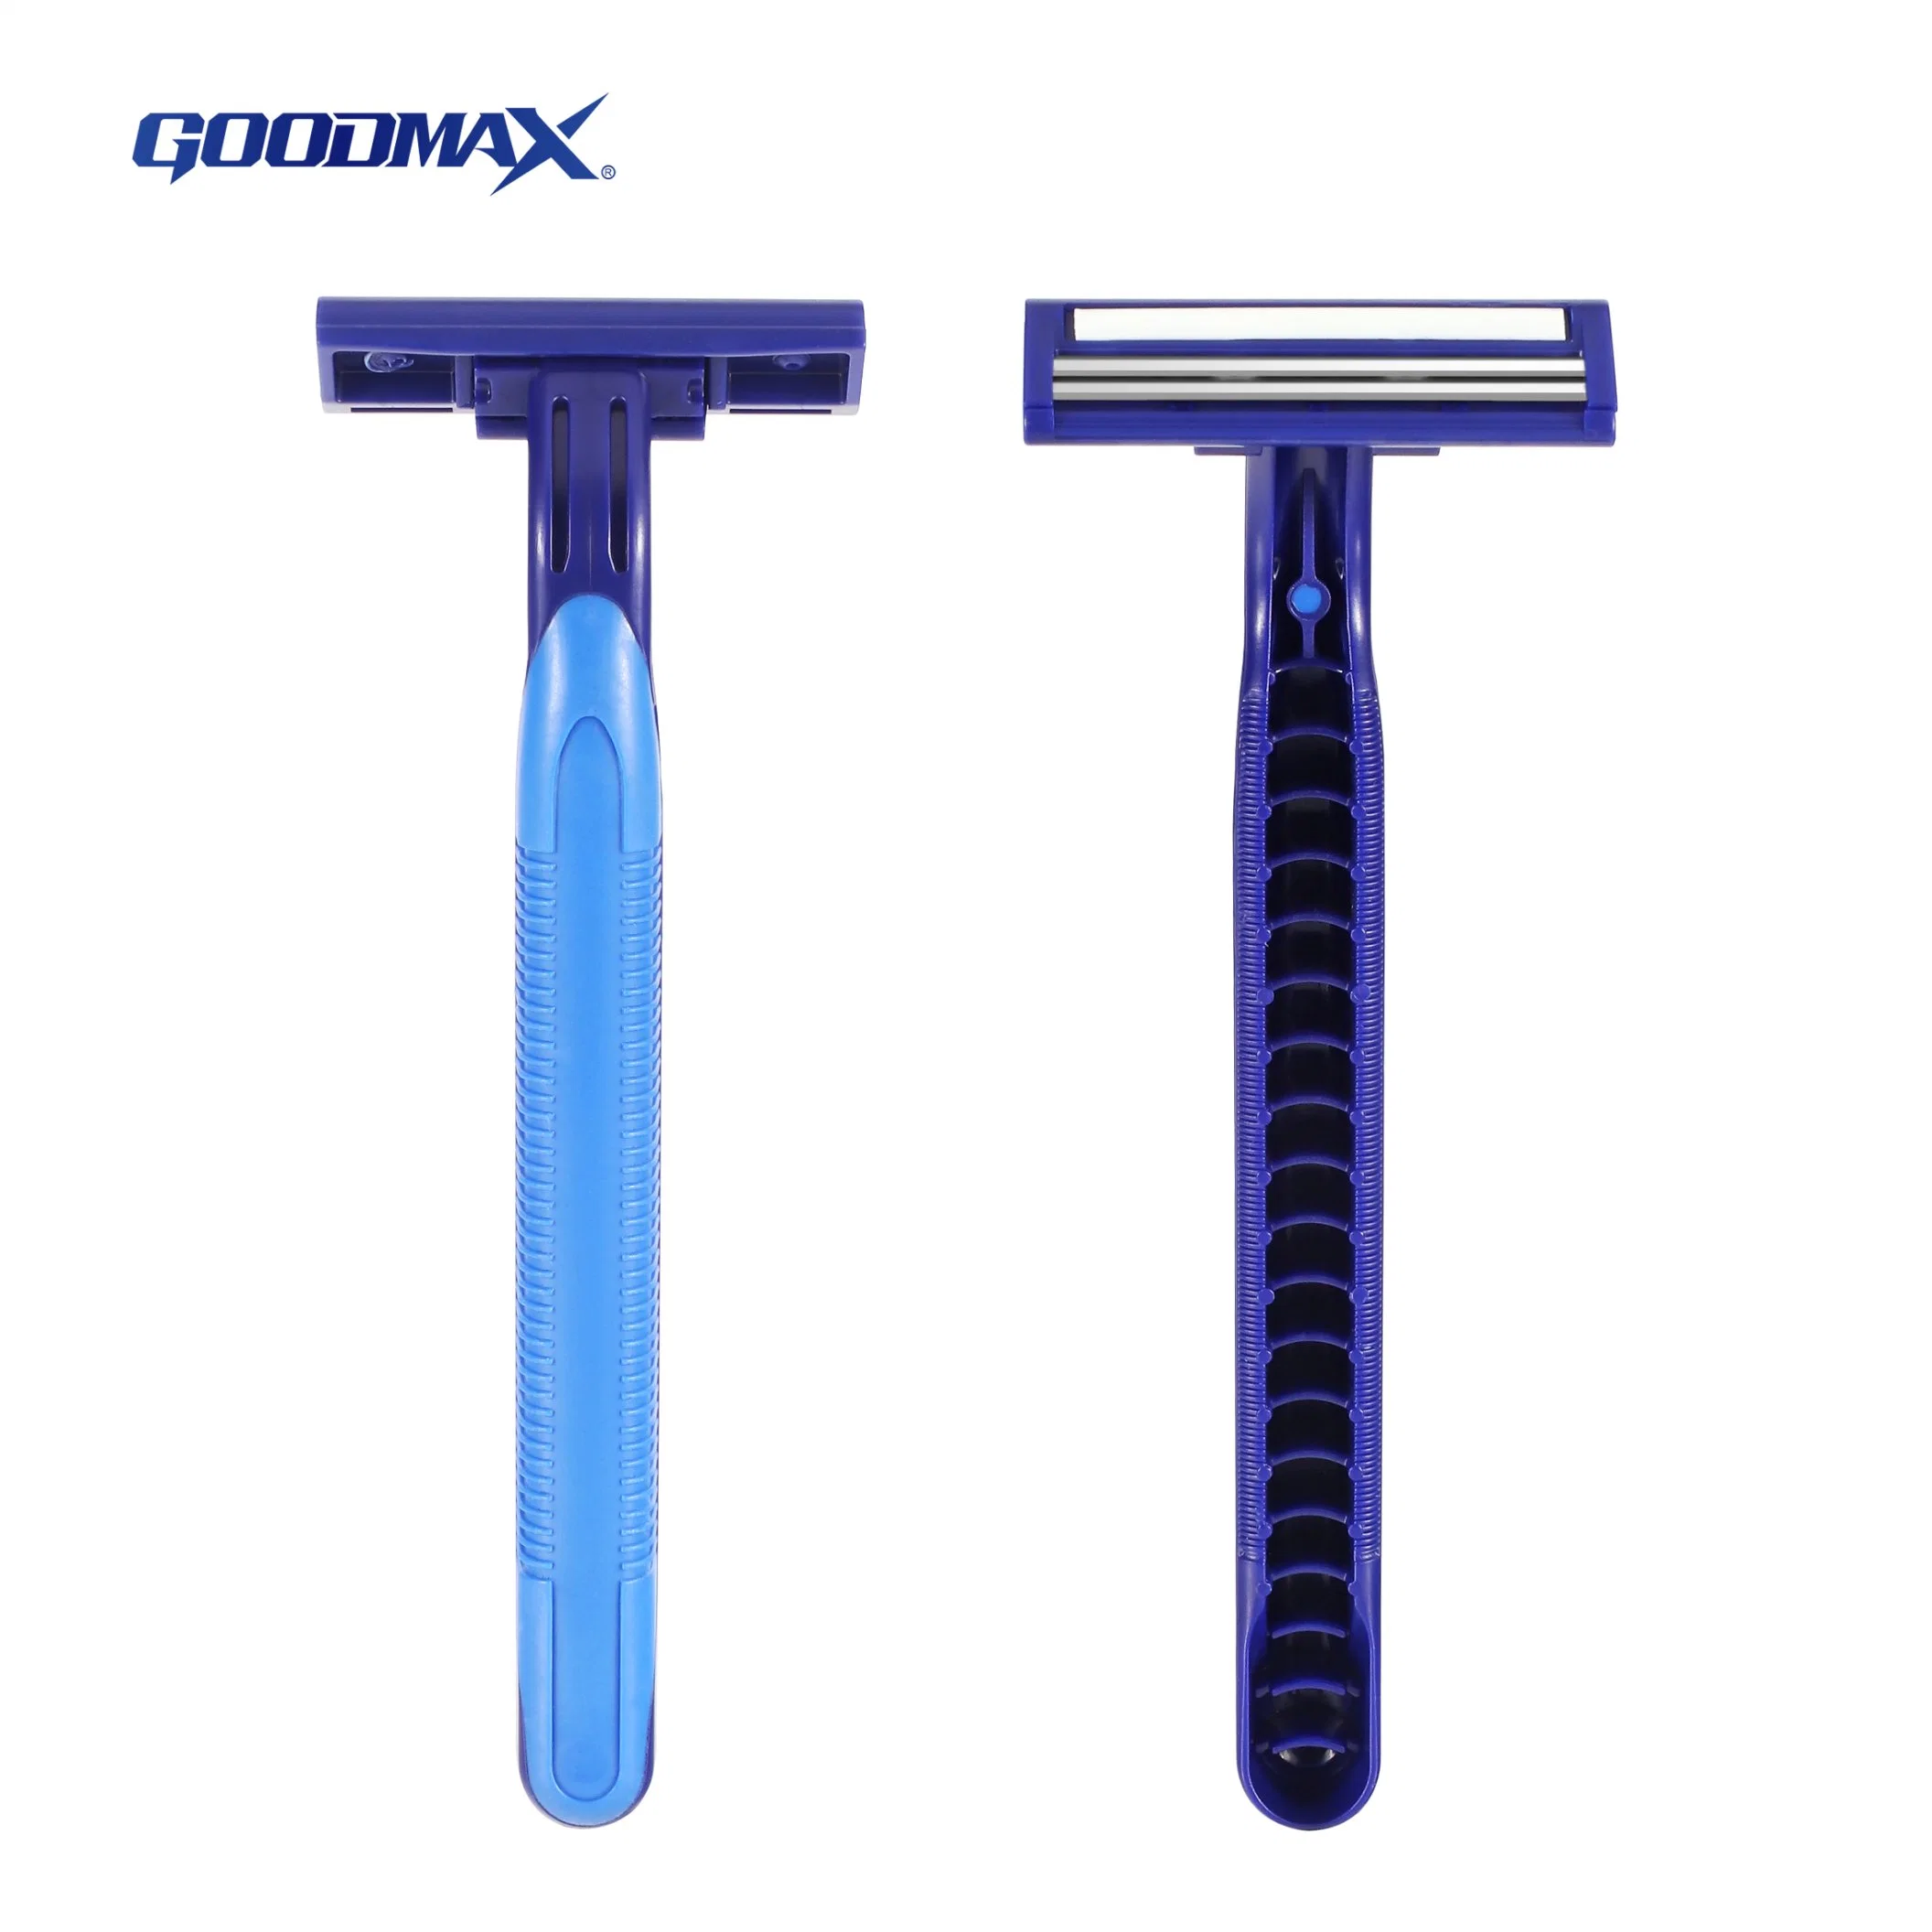 Doble sistema de cuchillas de afeitar de afeitar (SL-3006L) Fabricado en China